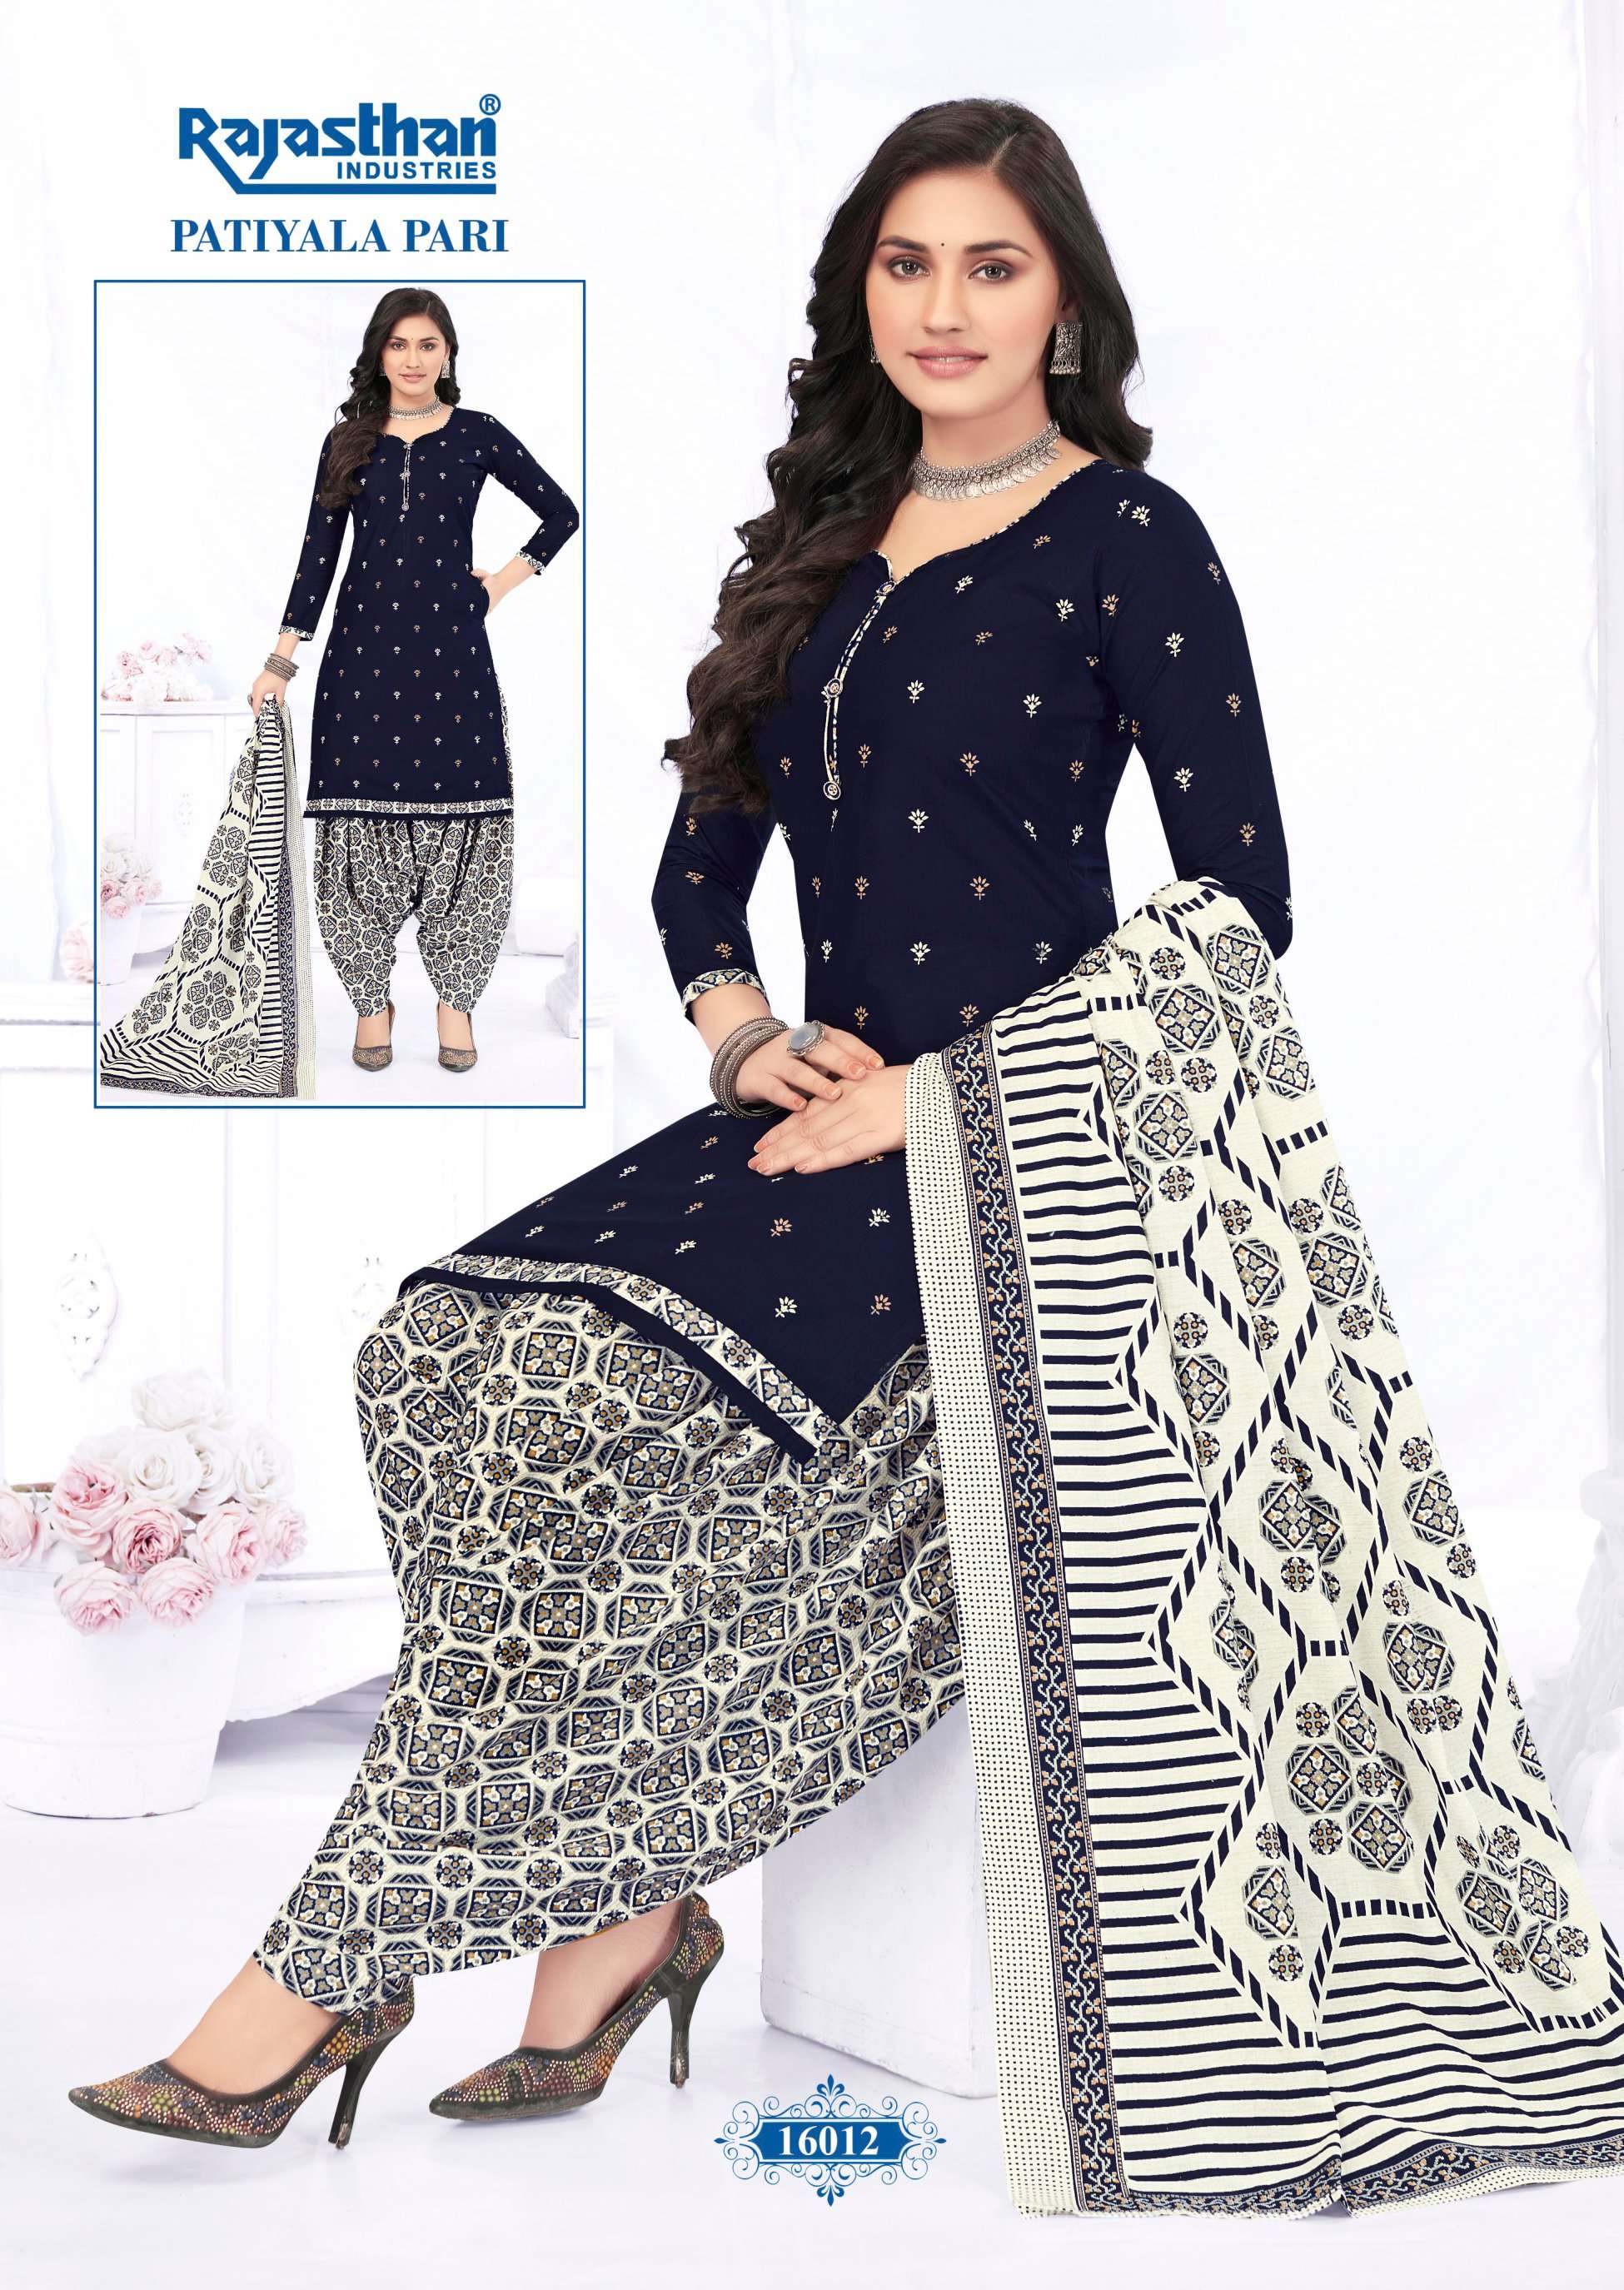 Patiyala Pari Vol 16 Buy Rajasthan Designer Cotton Lowest Price Salwar Suit Readymade Suit